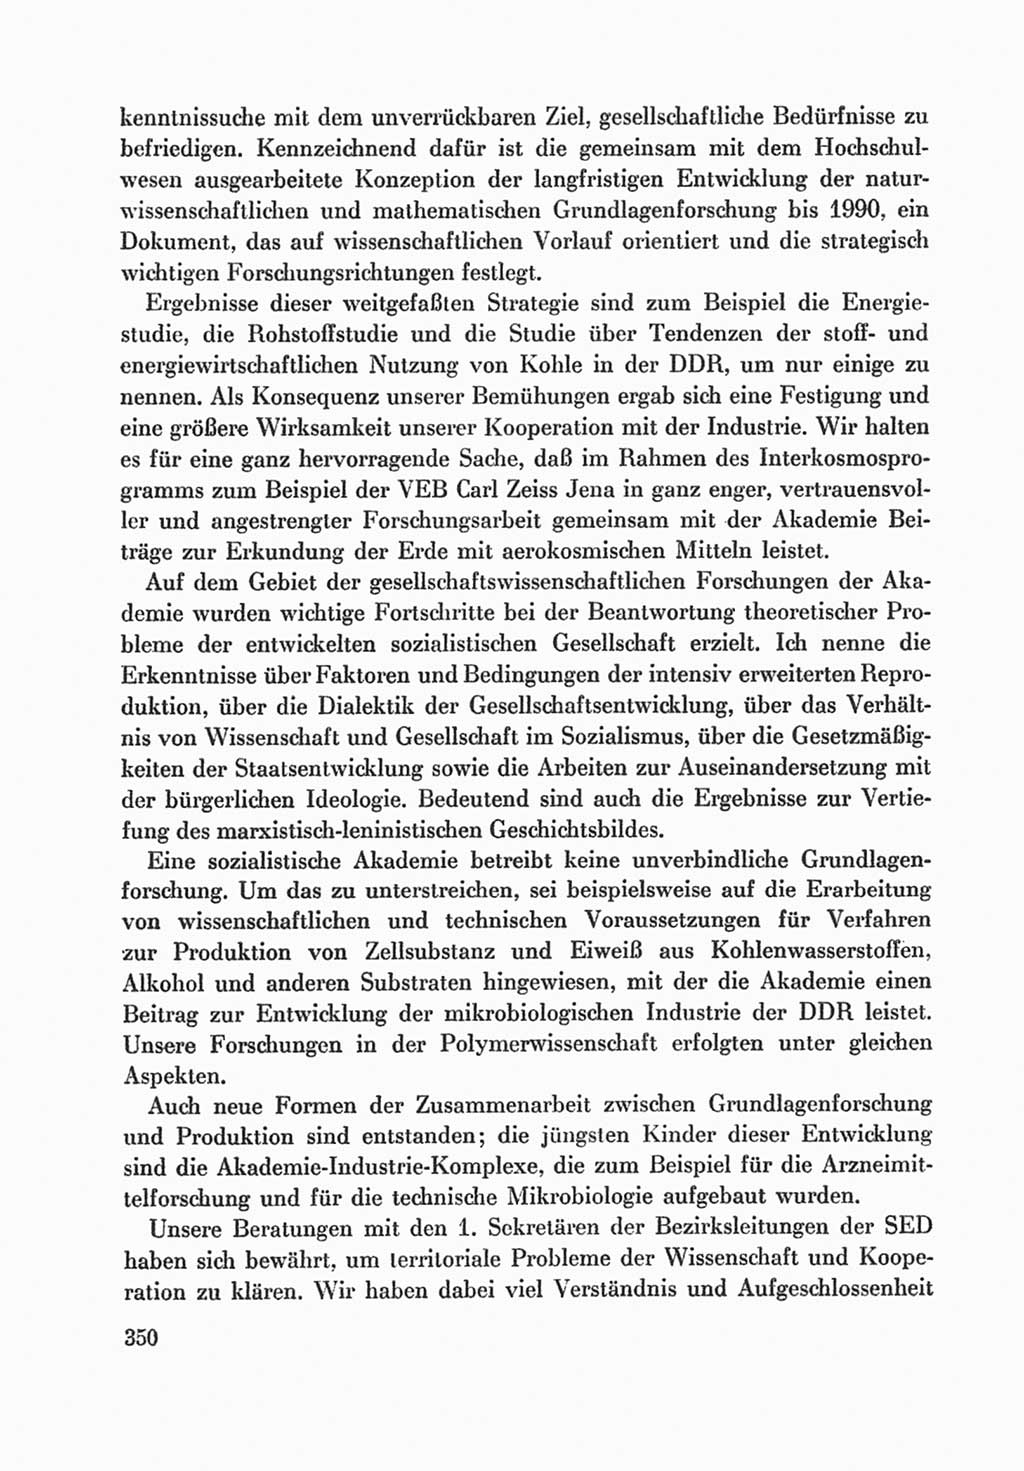 Protokoll der Verhandlungen des Ⅸ. Parteitages der Sozialistischen Einheitspartei Deutschlands (SED) [Deutsche Demokratische Republik (DDR)] 1976, Band 1, Seite 350 (Prot. Verh. Ⅸ. PT SED DDR 1976, Bd. 1, S. 350)